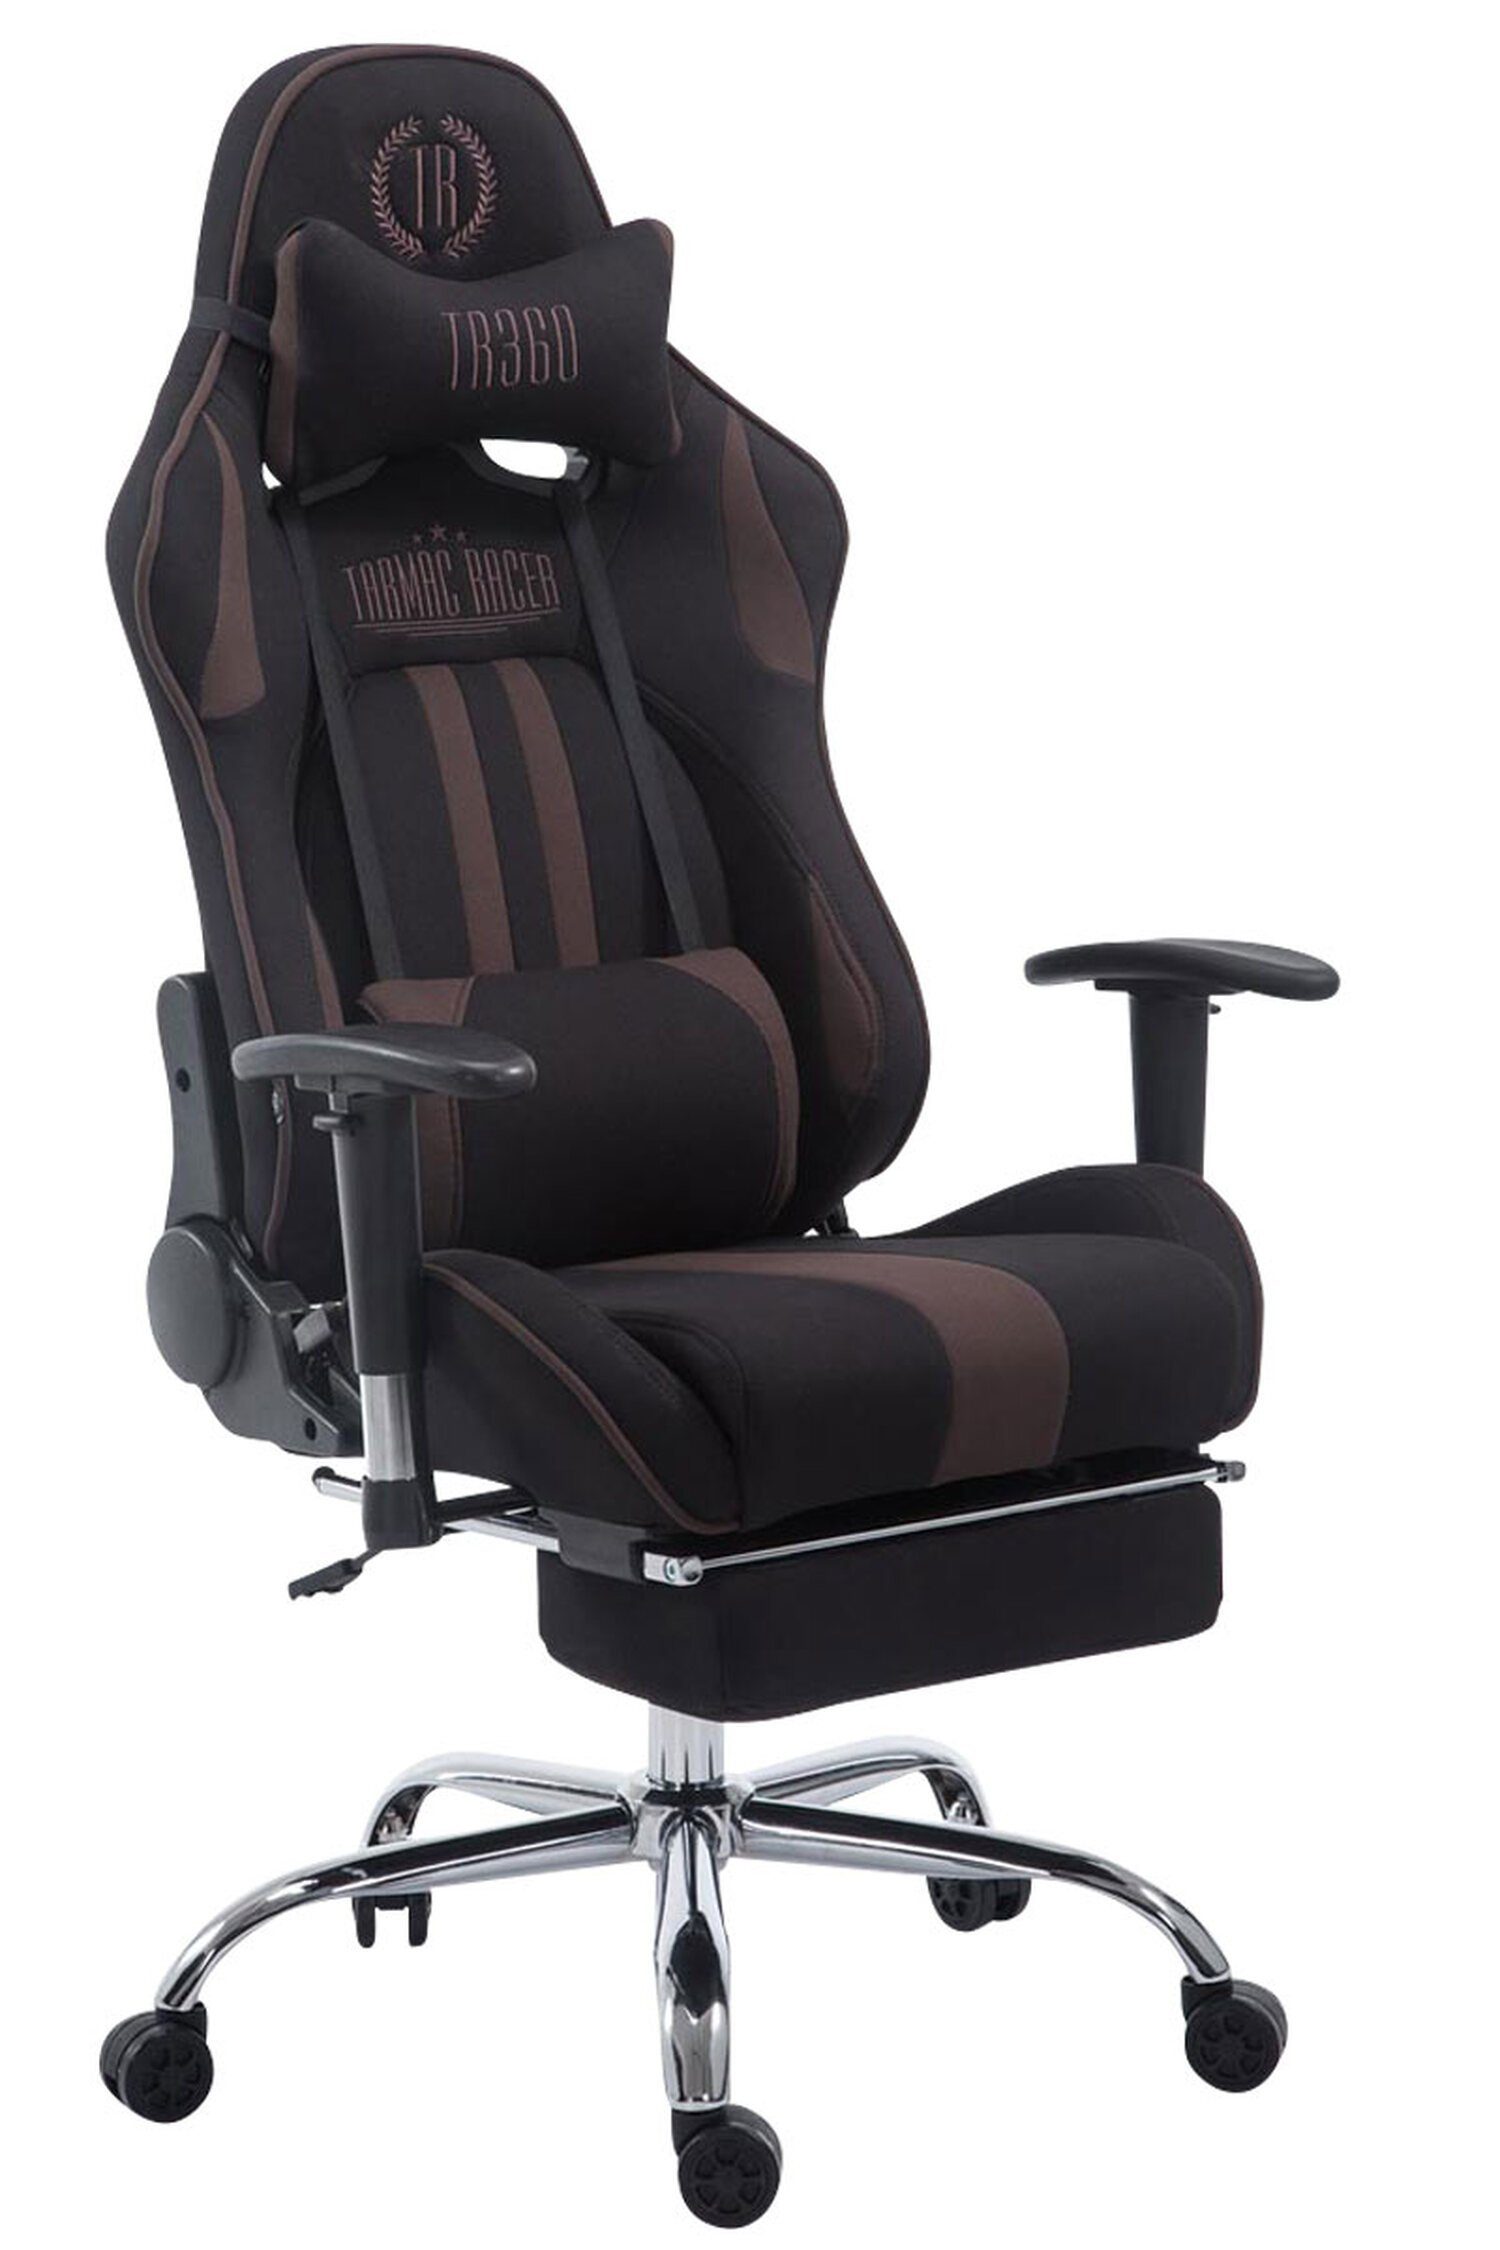 TPFLiving Gaming-Stuhl Limitless-2 mit bequemer Rückenlehne - höhenverstellbar - 360° drehbar (Schreibtischstuhl, Drehstuhl, Gamingstuhl, Racingstuhl, Chefsessel), Gestell: Metall chrom - Sitzfläche: Stoff schwarz/braun